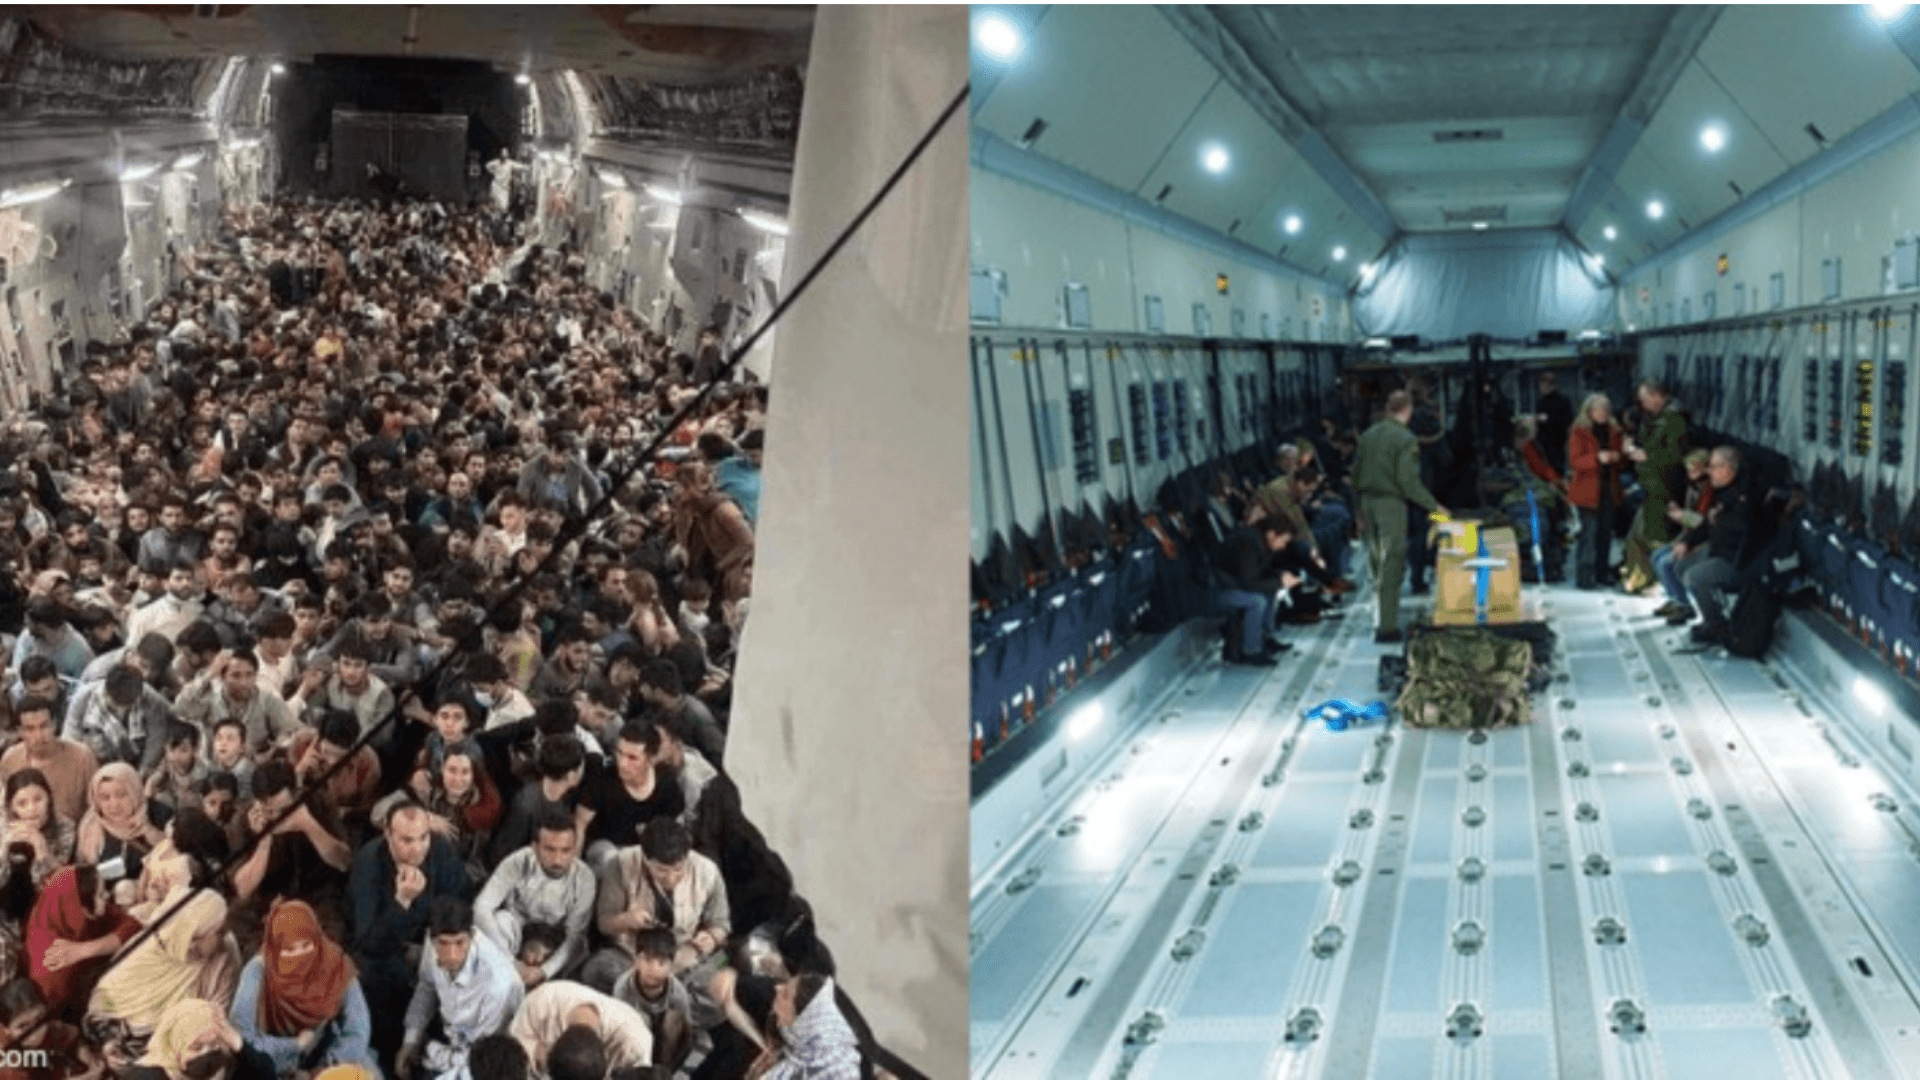 Diese beiden Fotos werden aktuell in Sozialen Netzwerken im Zusammenhang mit Evakuierungen aus Afghanistan verbreitet. Das linke ist aktuell und zeigt den Innenraum einer US-Luftwaffen-Maschine, das rechte jedoch zeigt den Innenraum einer Bundeswehr-Maschine und ist nicht aktuell. (Quelle: Reddit/ Screenshot: CORRECTIV.Faktencheck)